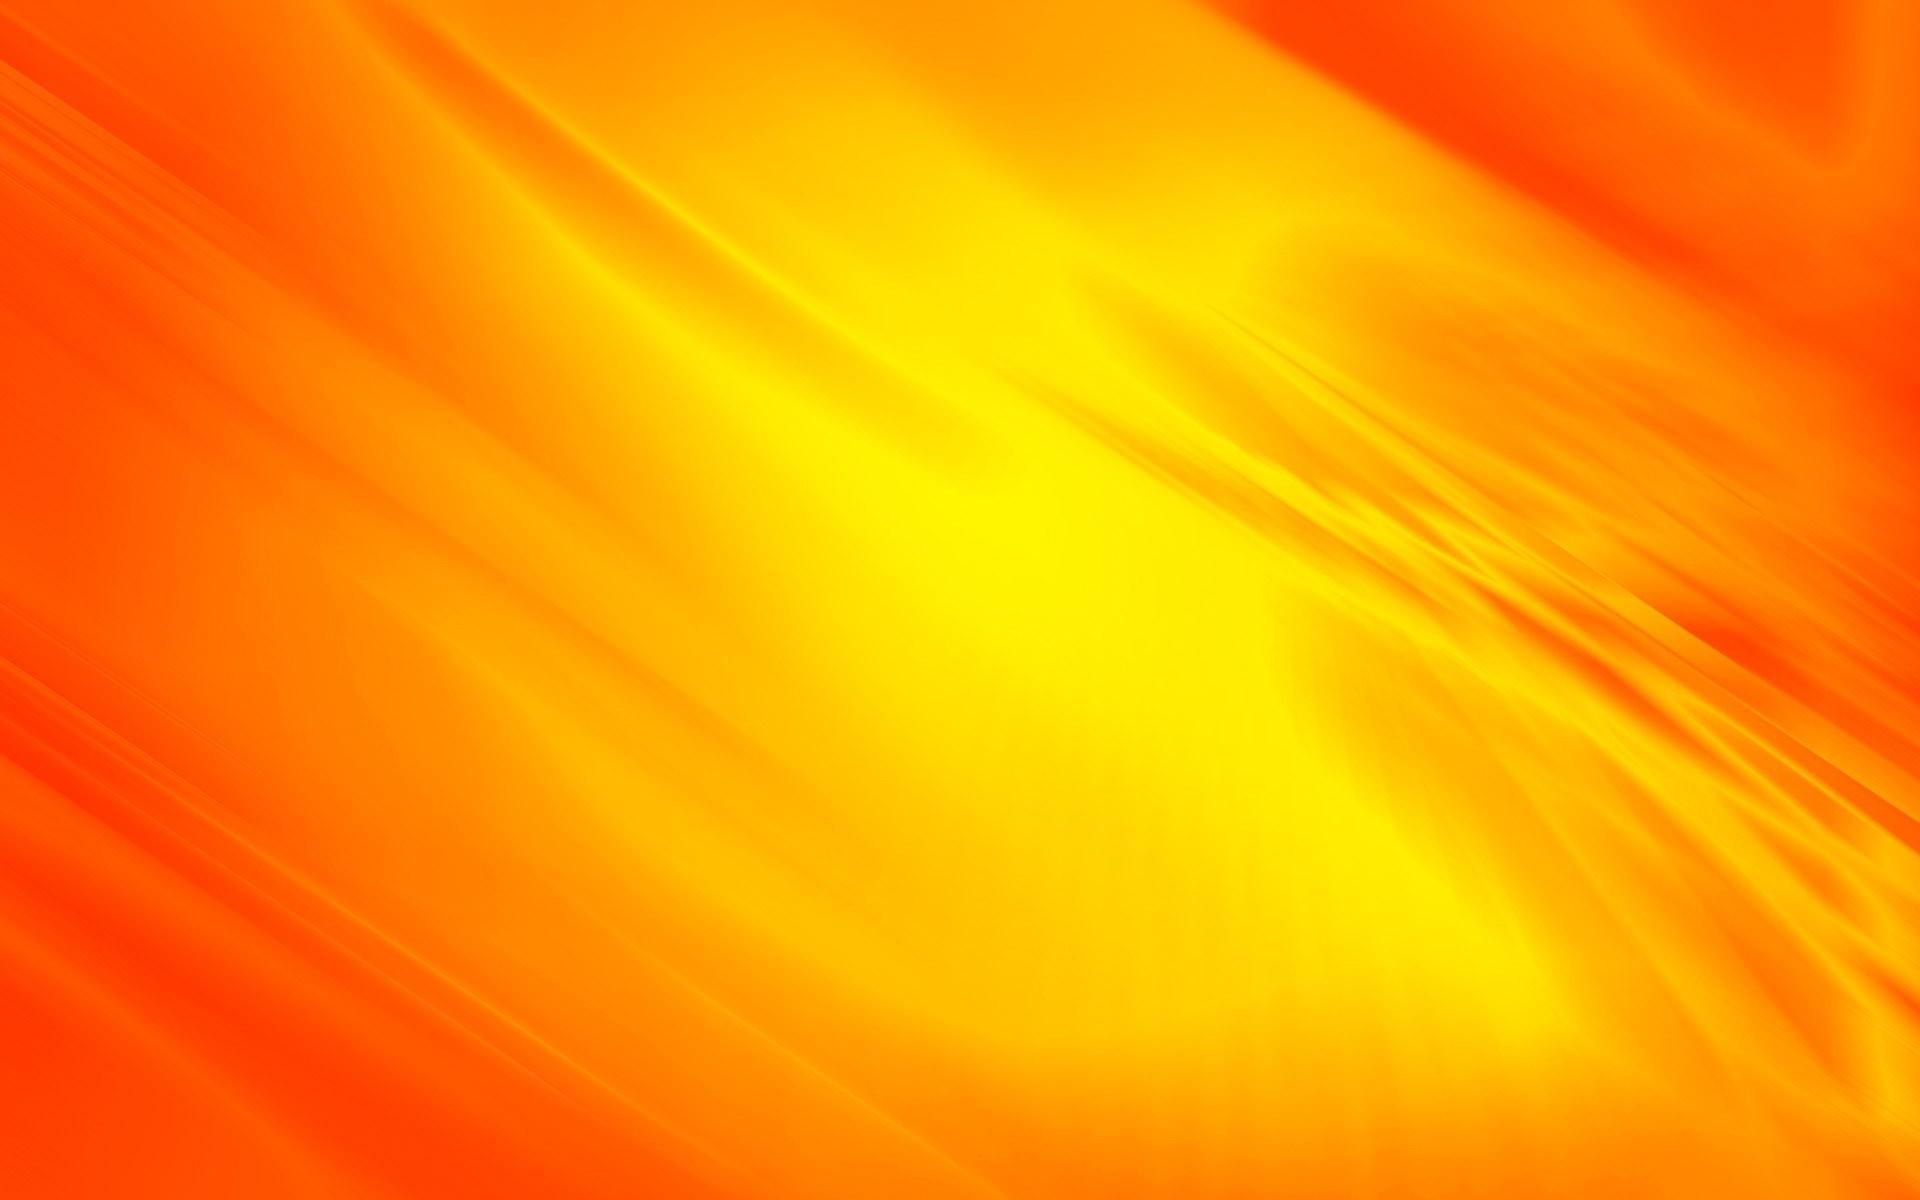 Rays Yellow Background  Free image on Pixabay